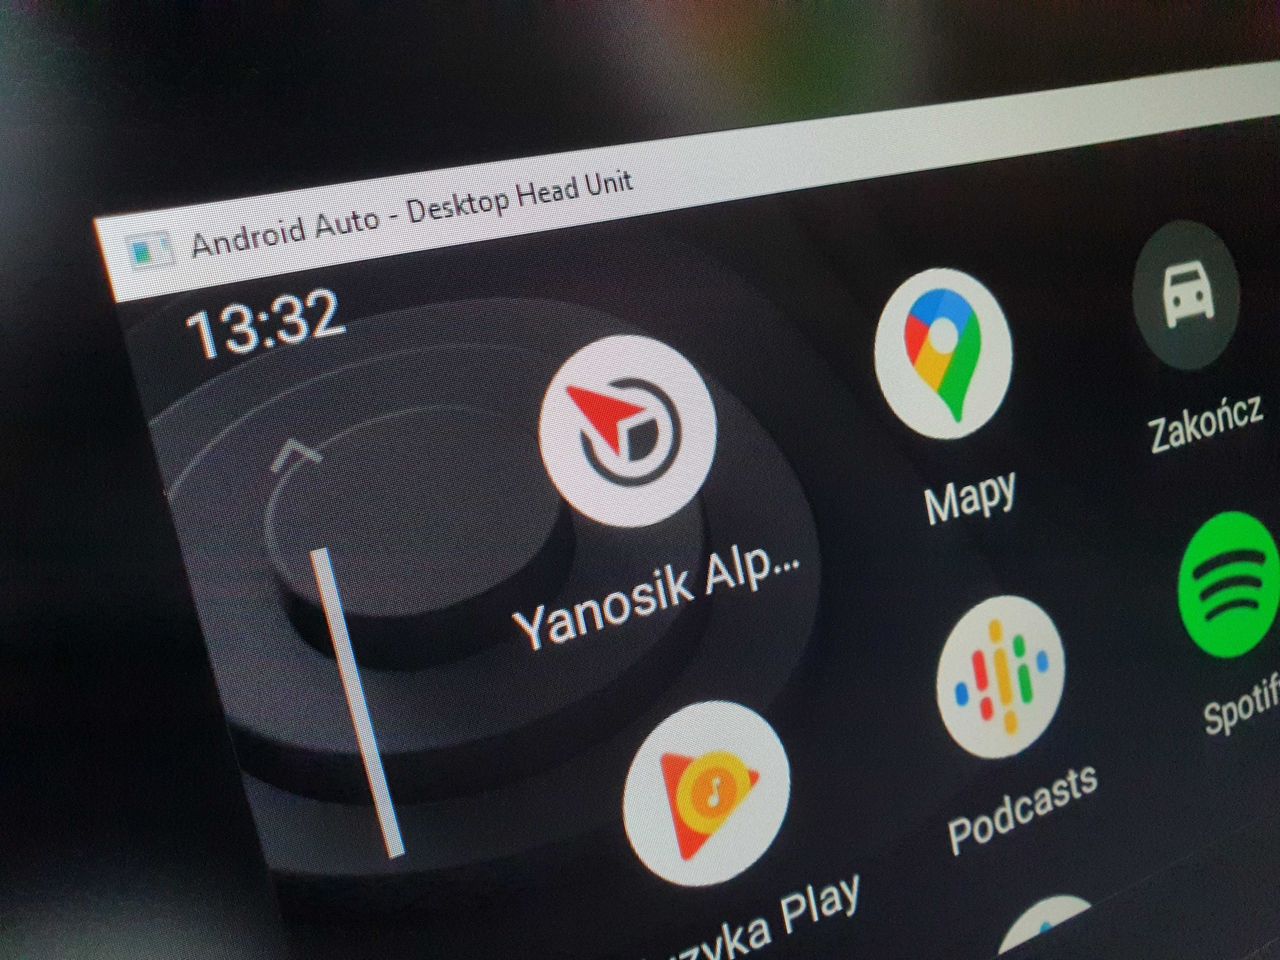 Yanosik zadziała w Android Auto: testy już trwają, "praca wre" (aktualizacja)